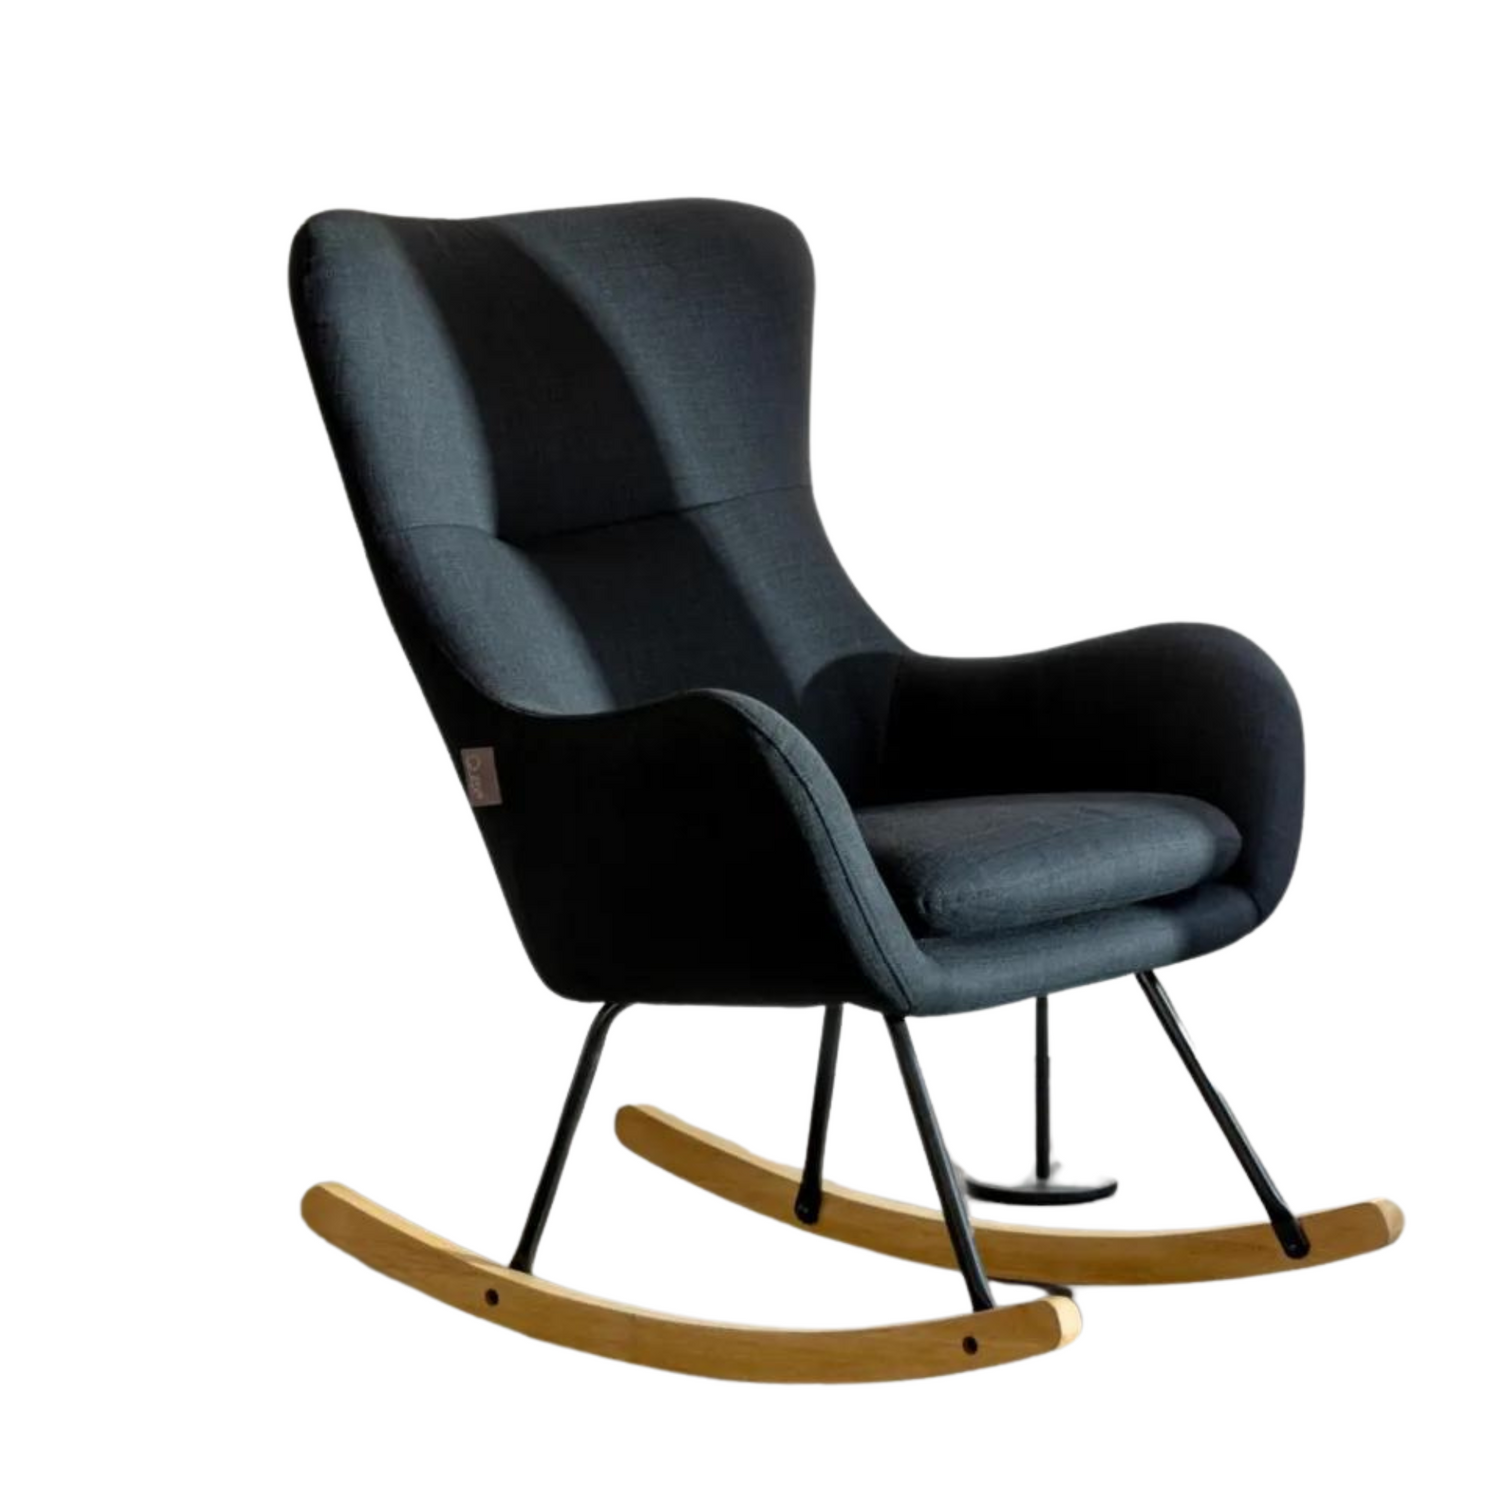 Quax rocking chair Basic - Desert